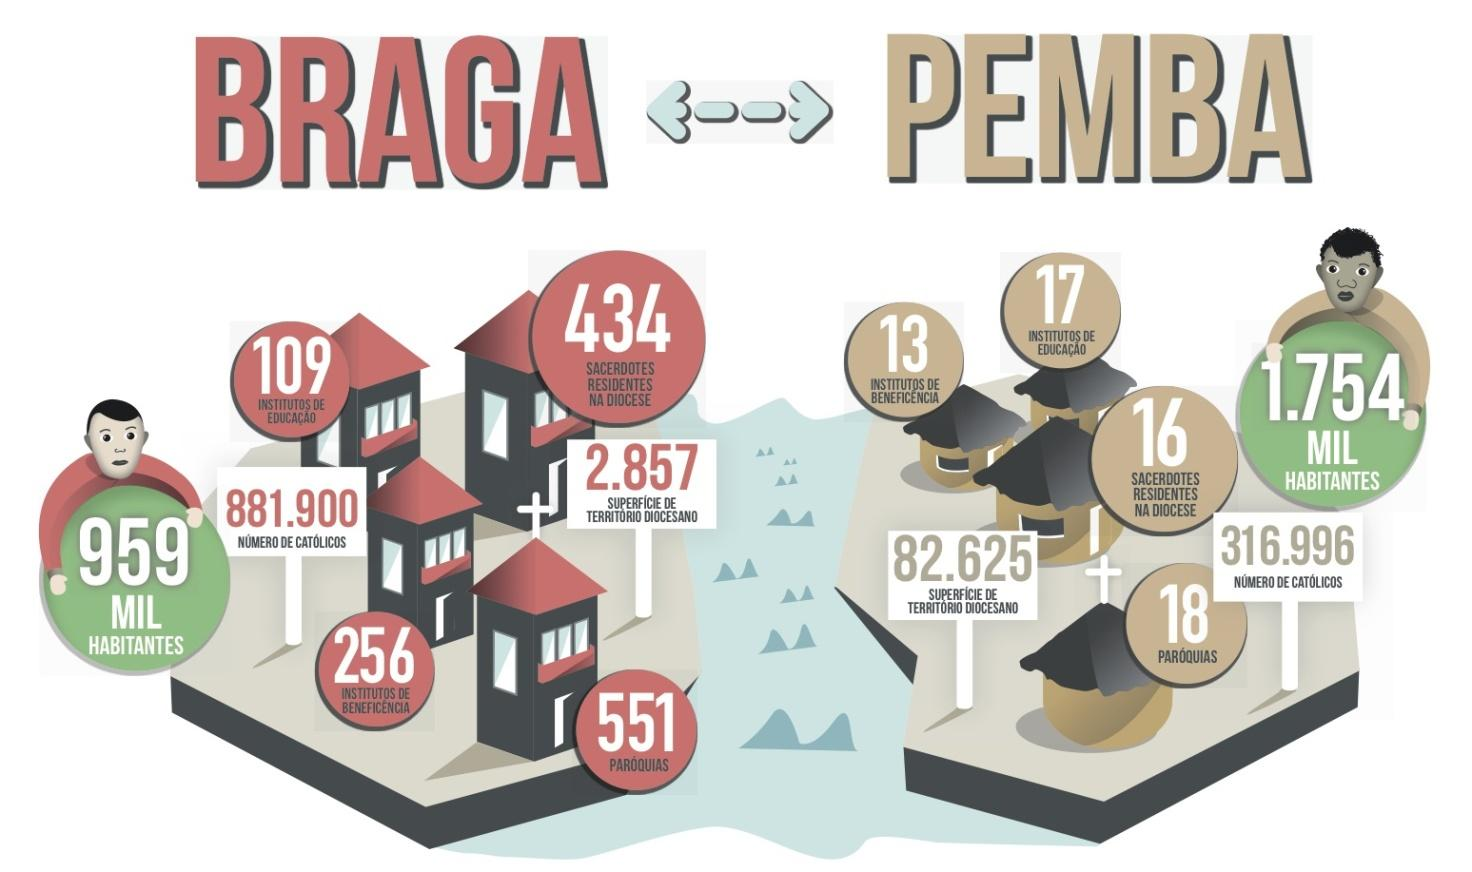 Figura 1: Comparação das realidades religiosa e social das dioceses de Braga e Pemba.